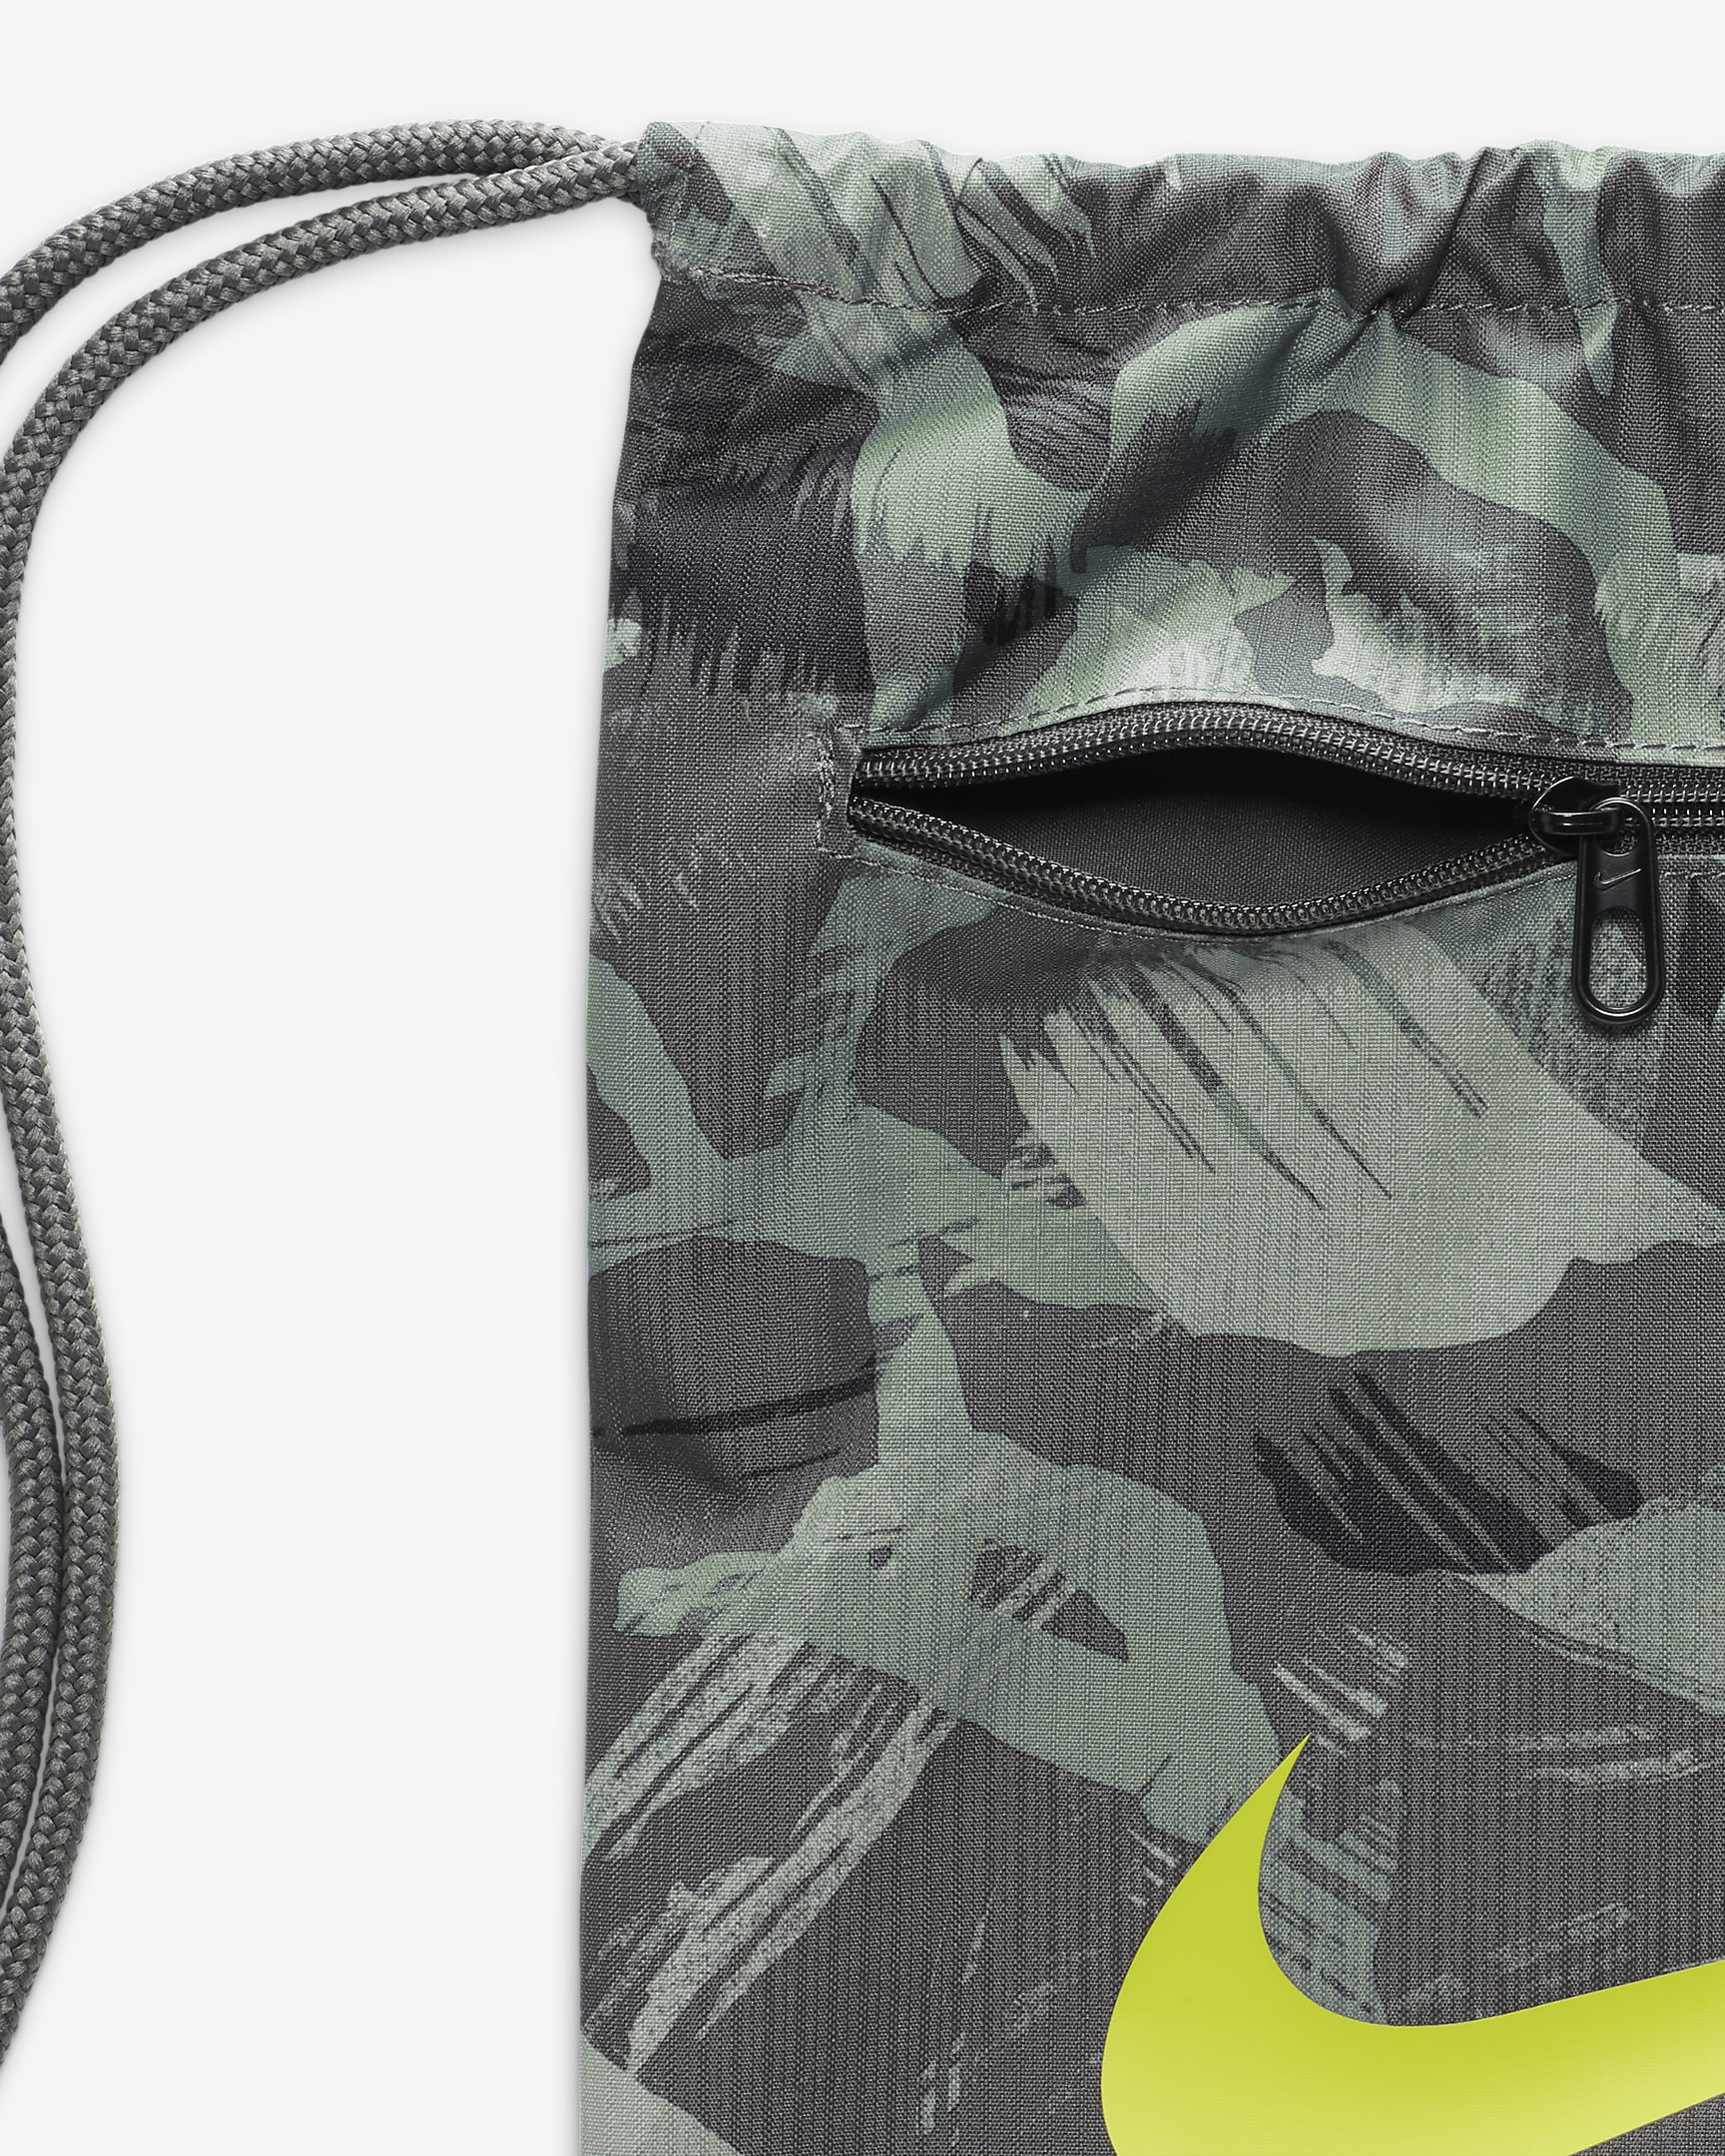 Nike Brasilia Printed Drawstring Bag (18L). Nike PH